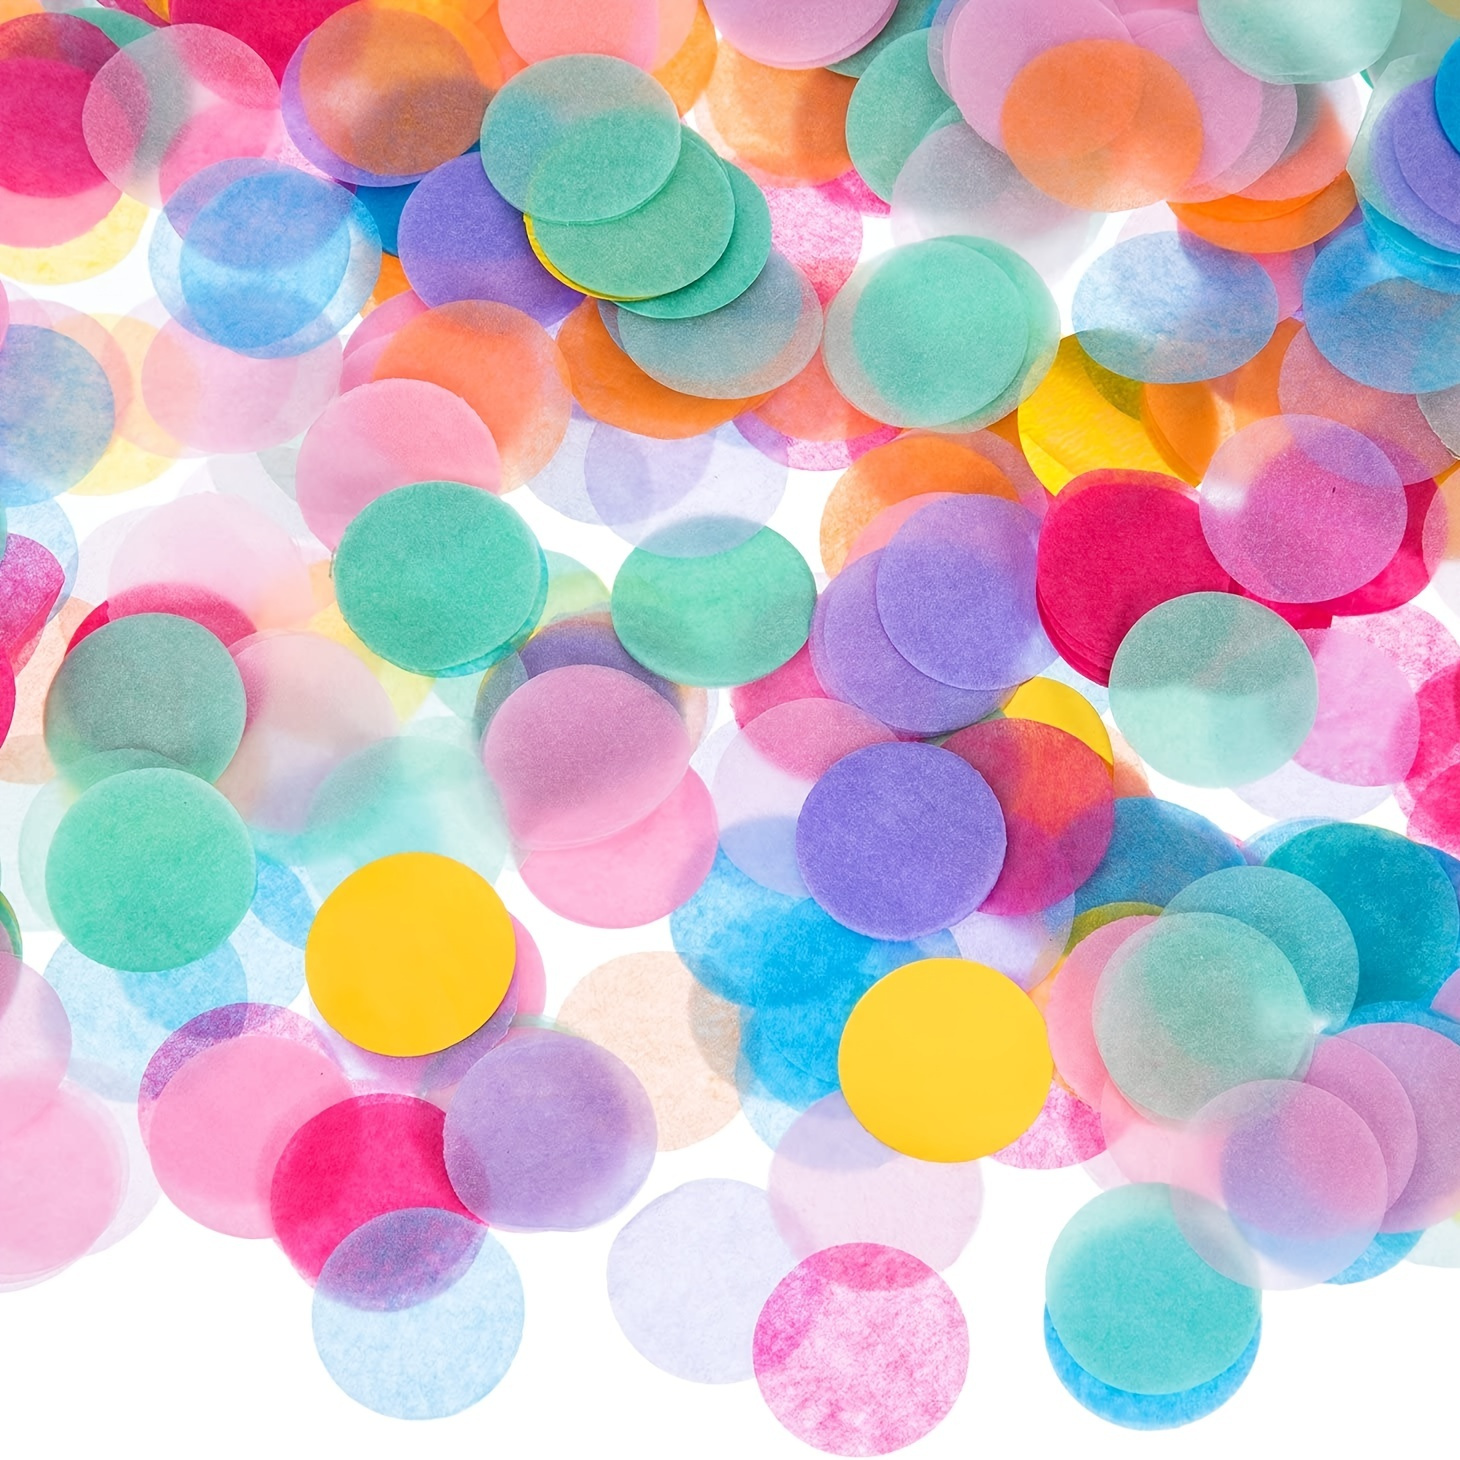 

10 000 morceaux de confettis en papier de soie multicolore de 1 pouce pour lancer lors des mariages et créer une atmosphère de fête, idéal pour offrir à Pâques